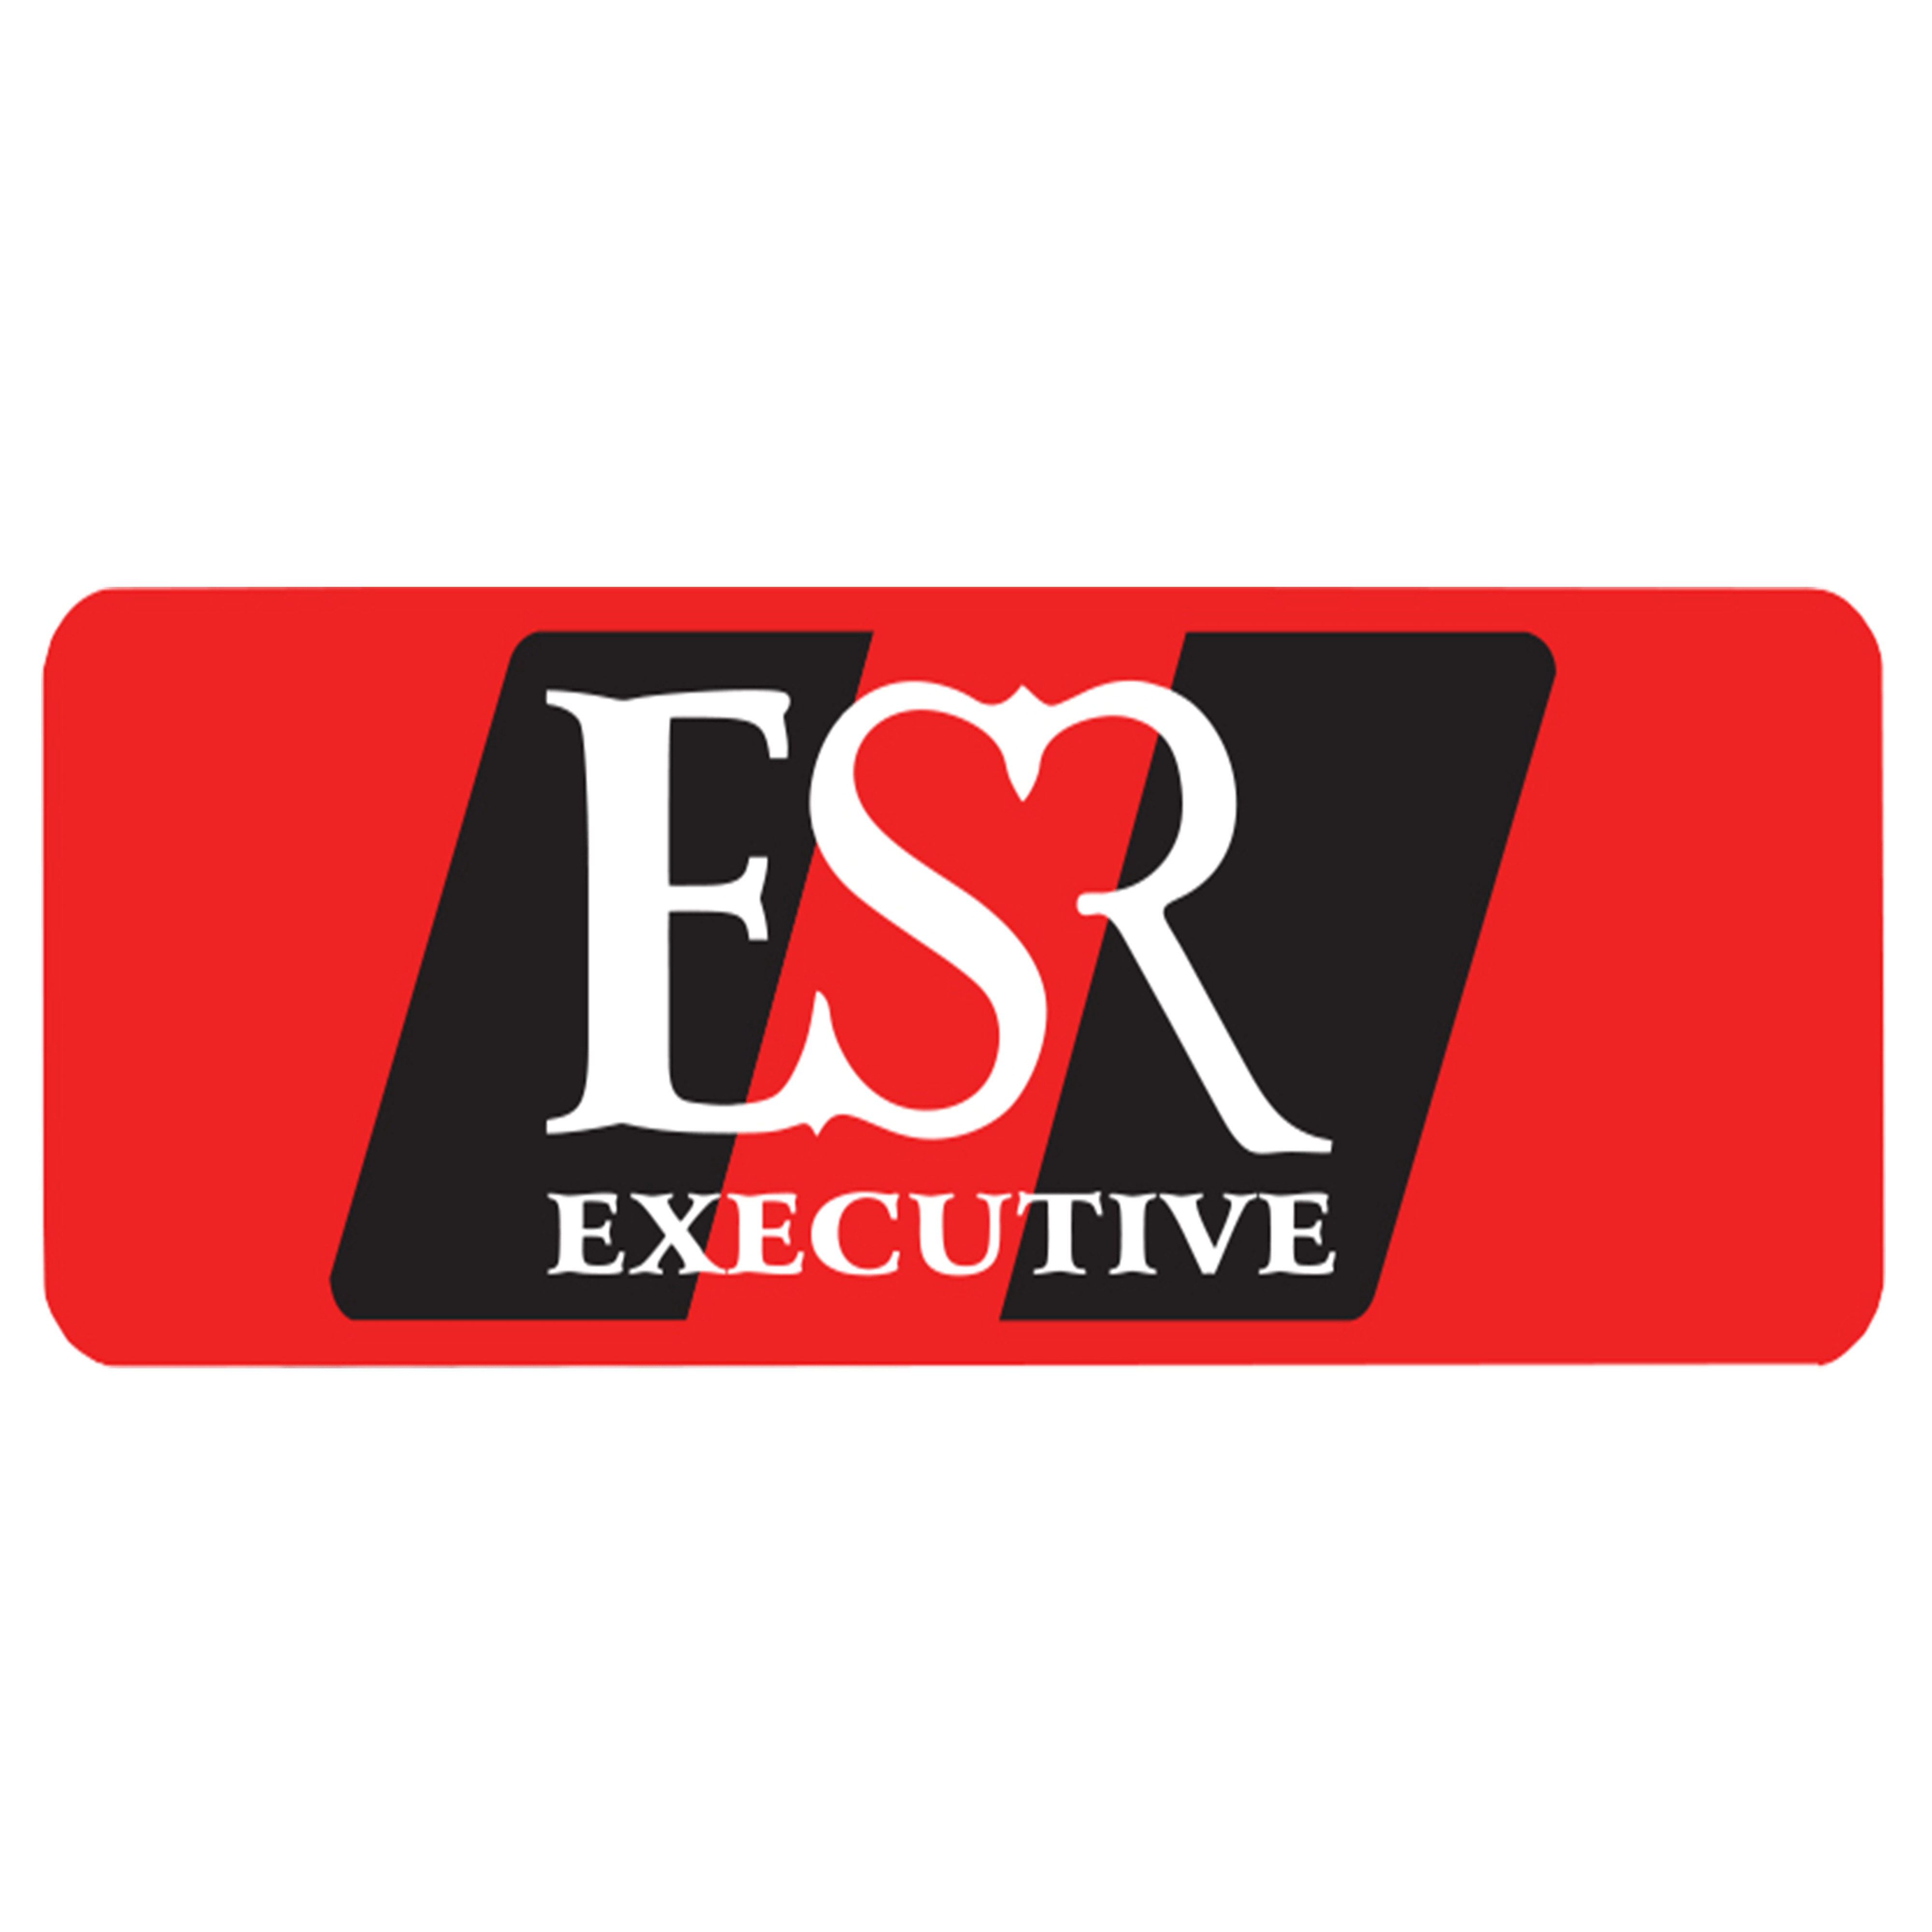 ESR Executive Super Rides Limited